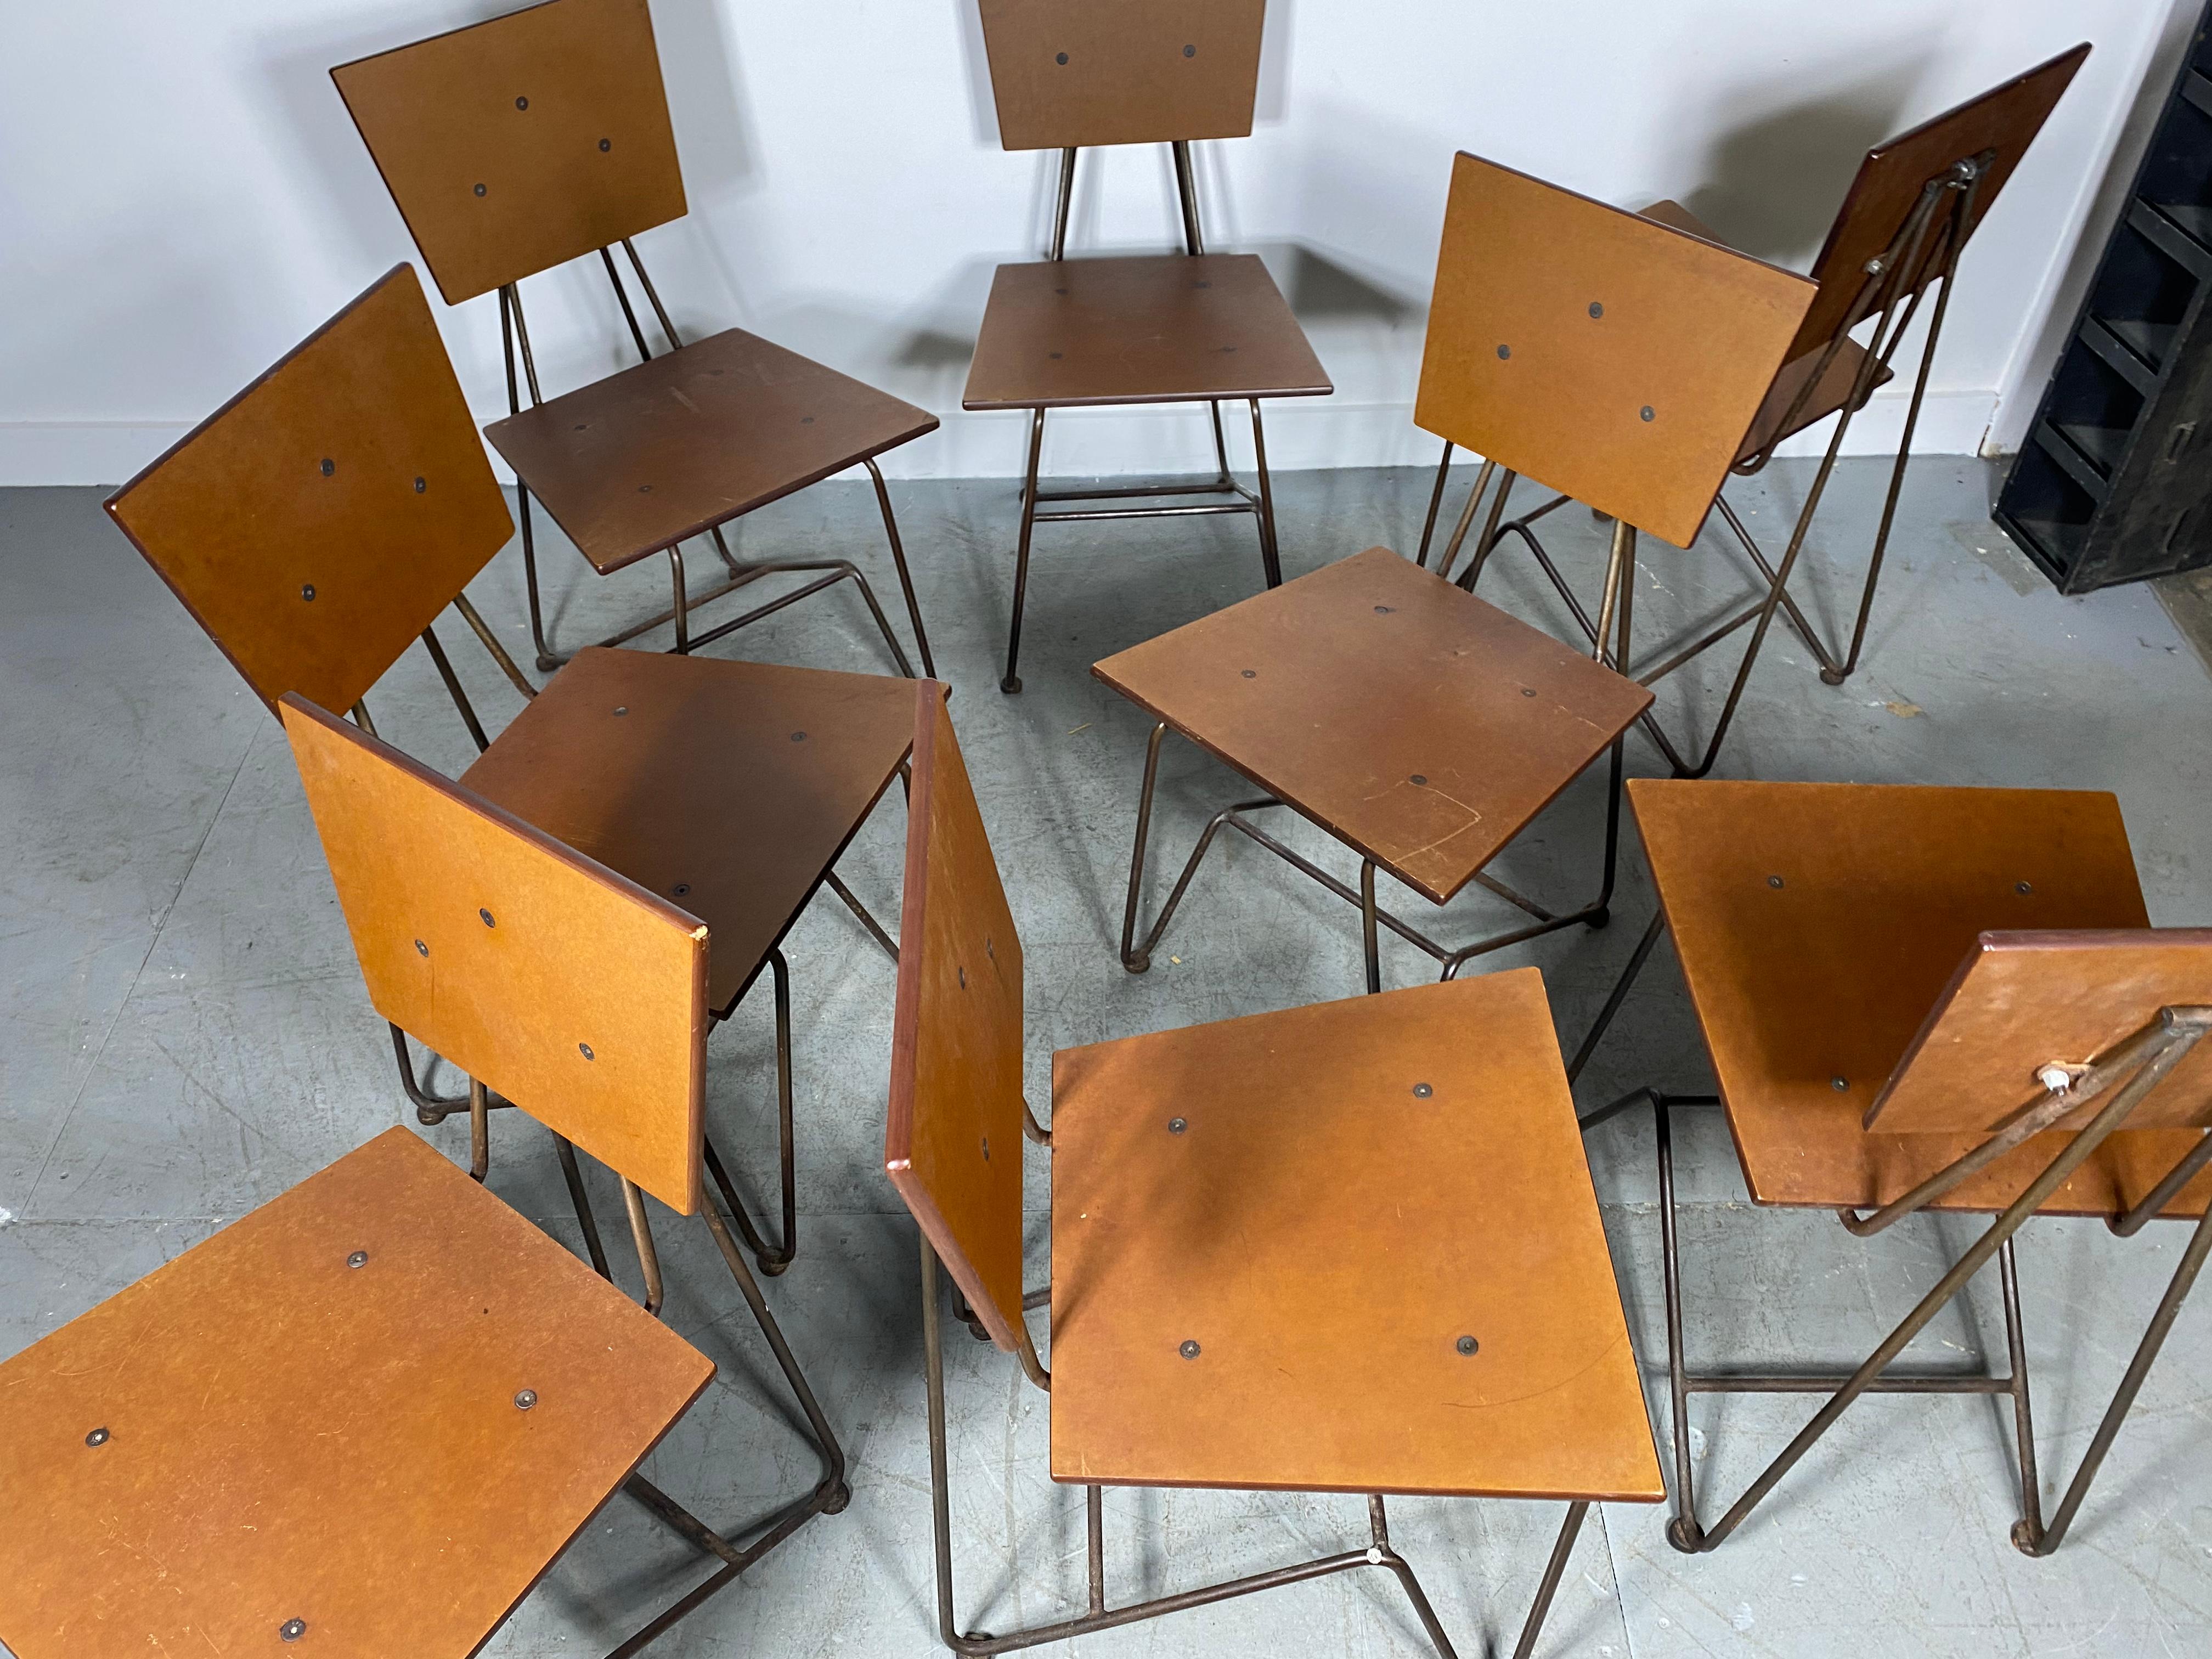 8 modernistische Esszimmerstühle aus Eisen und Sperrholz, entworfen von Steve Sauer

BRUCE GUESWEL STUHL AUS ZINK UND PLY
Das zeitgenössische Design wurde 1995 von Steve Sauer für die Chipotle-Restaurantgruppe entworfen. Als Vorbild für diesen